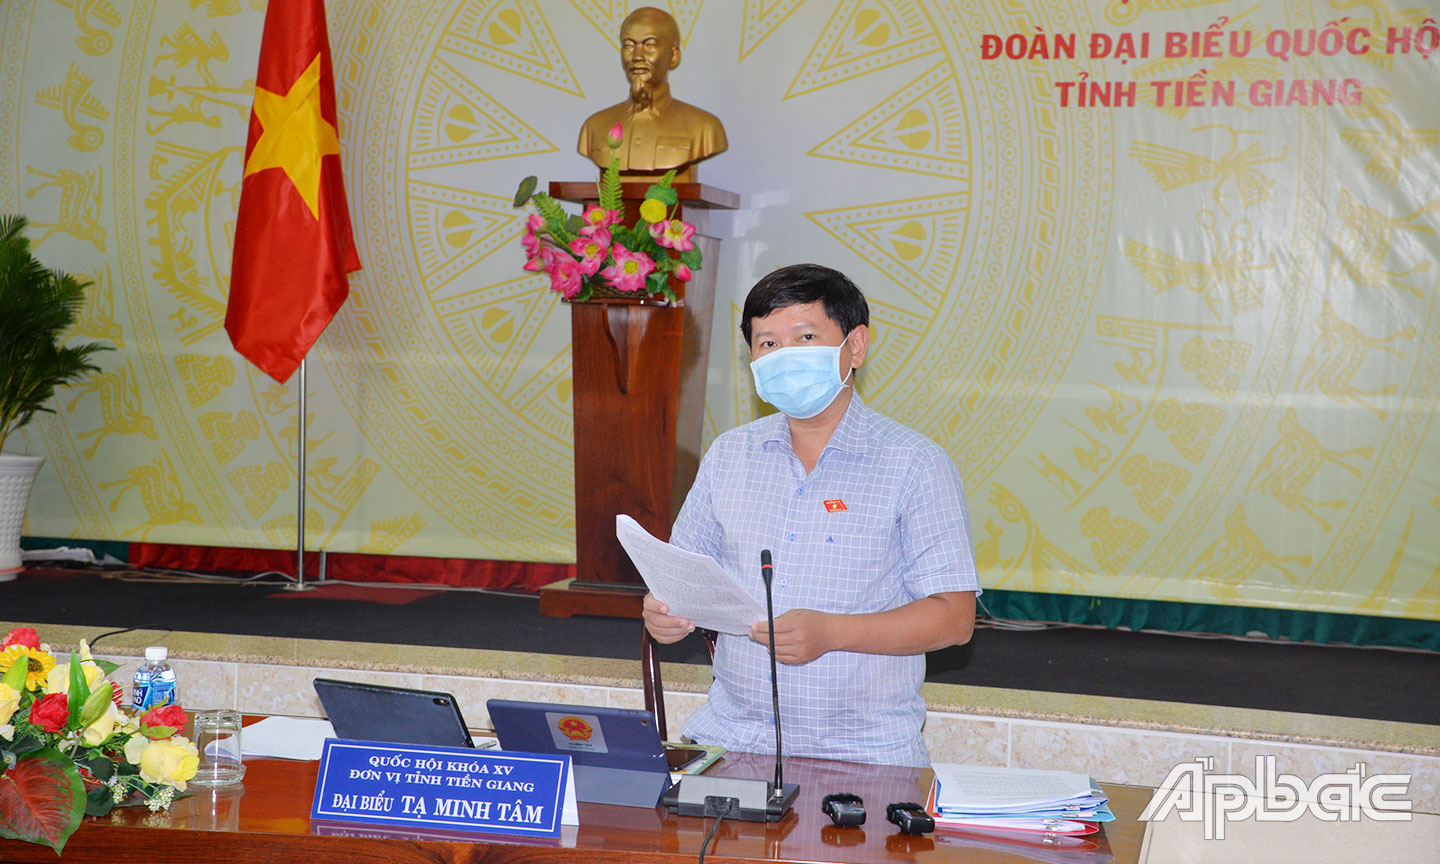 Phó trưởng Đoàn Đại biểu Quốc hội đơn vị tỉnh Tiền Giang Tạ Minh Tâm phát biểu tại buổi thảo luận tổ.